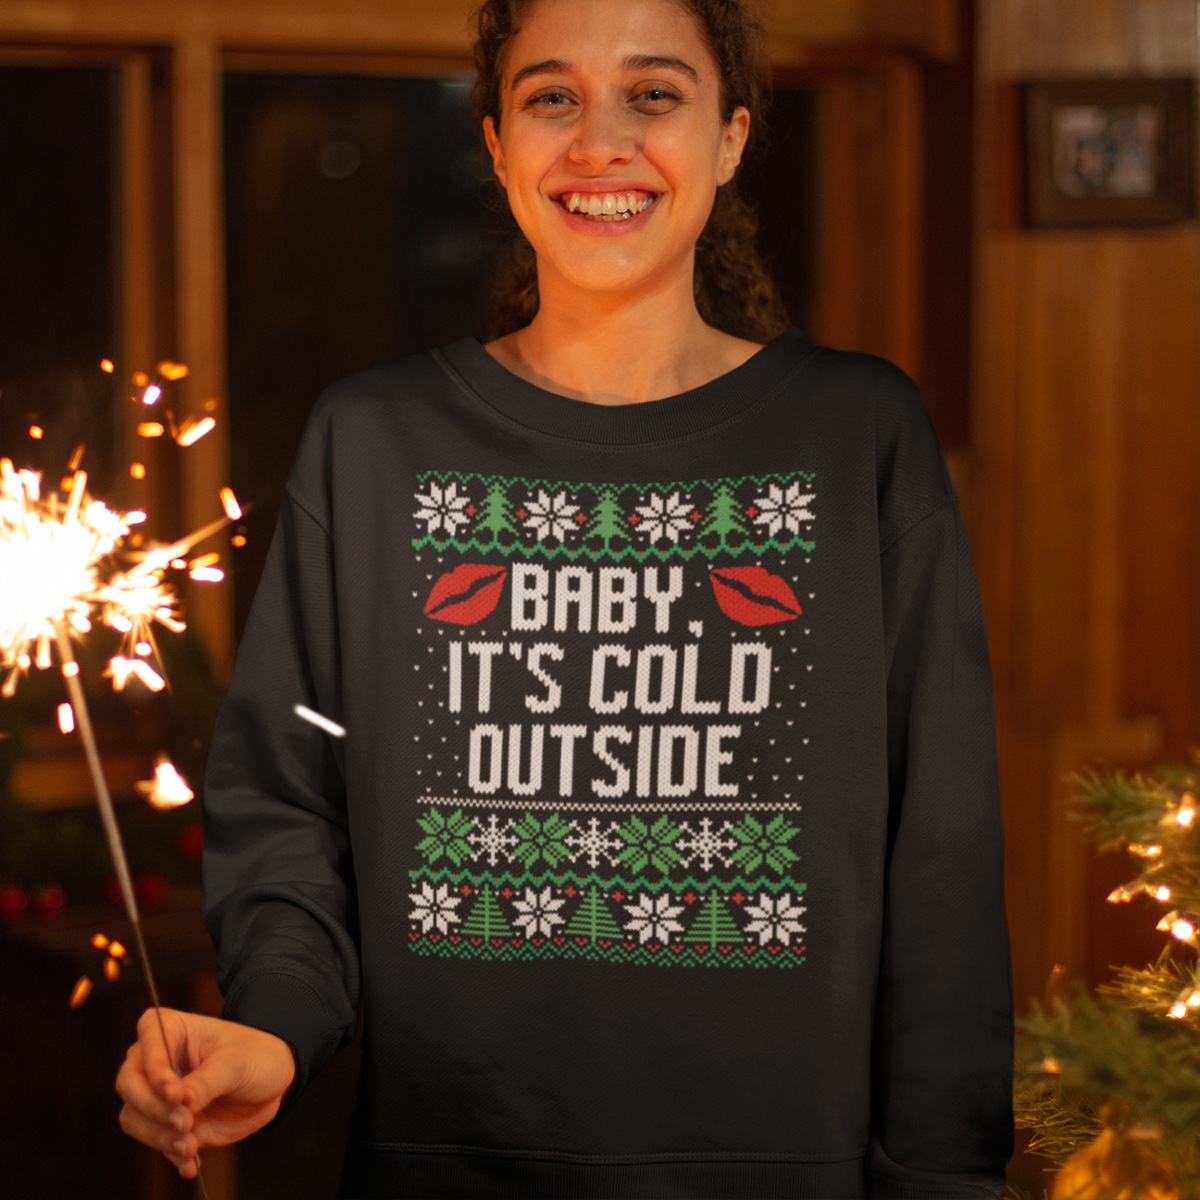 Eik Resistent Kracht Kersttrui Baby It's Cold Outside - Foute Kerstsweaters